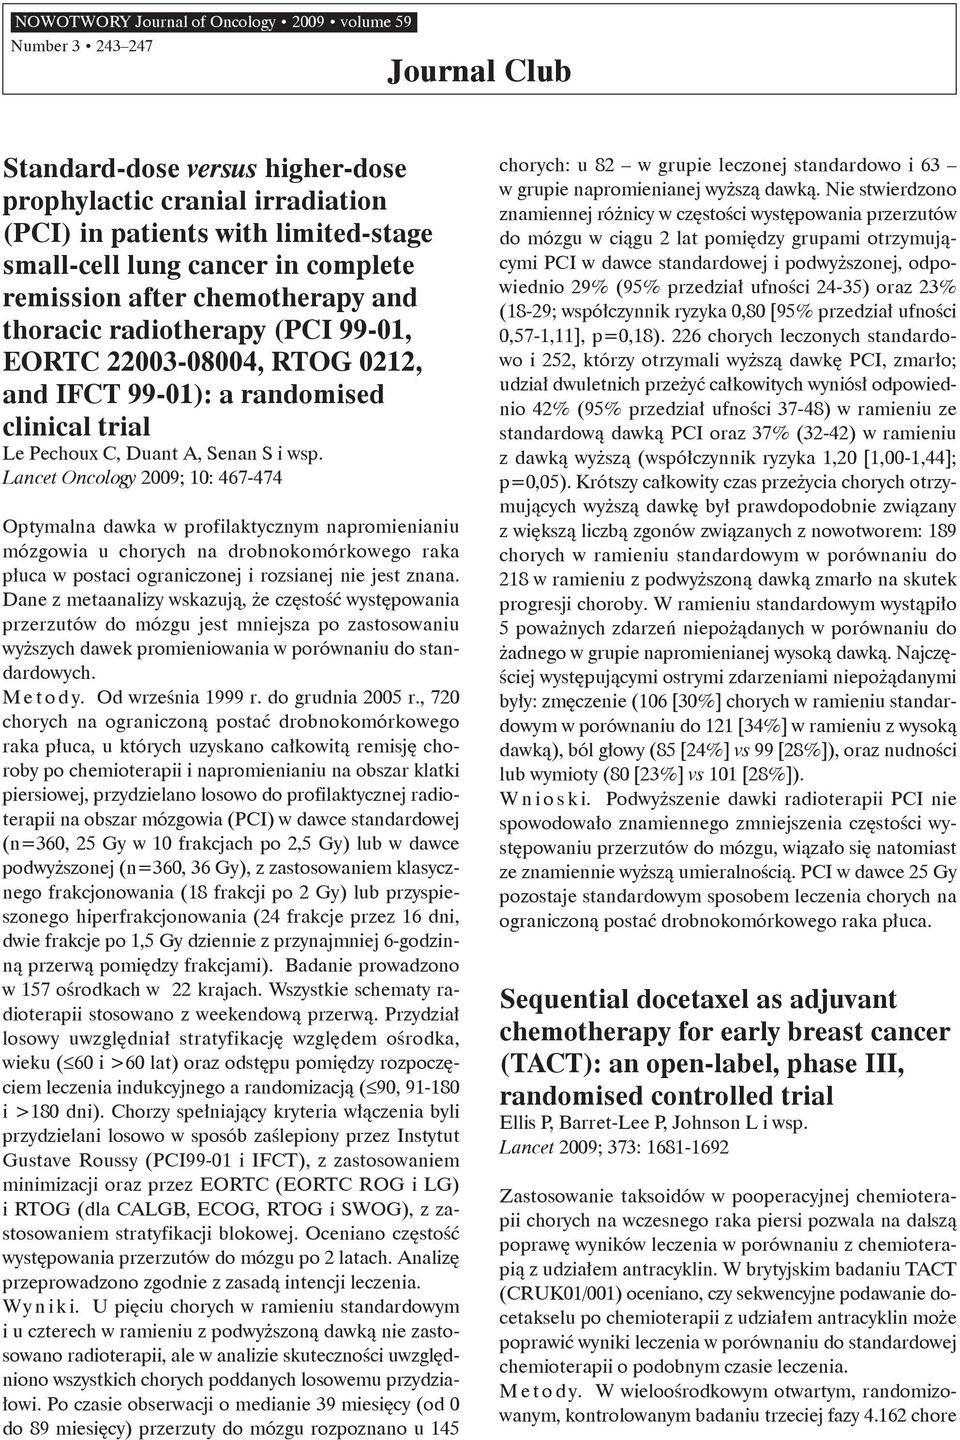 Lancet Oncology 2009; 10: 467-474 Optymalna dawka w profilaktycznym napromienianiu mózgowia u chorych na drobnokomórkowego raka płuca w postaci ograniczonej i rozsianej nie jest znana.